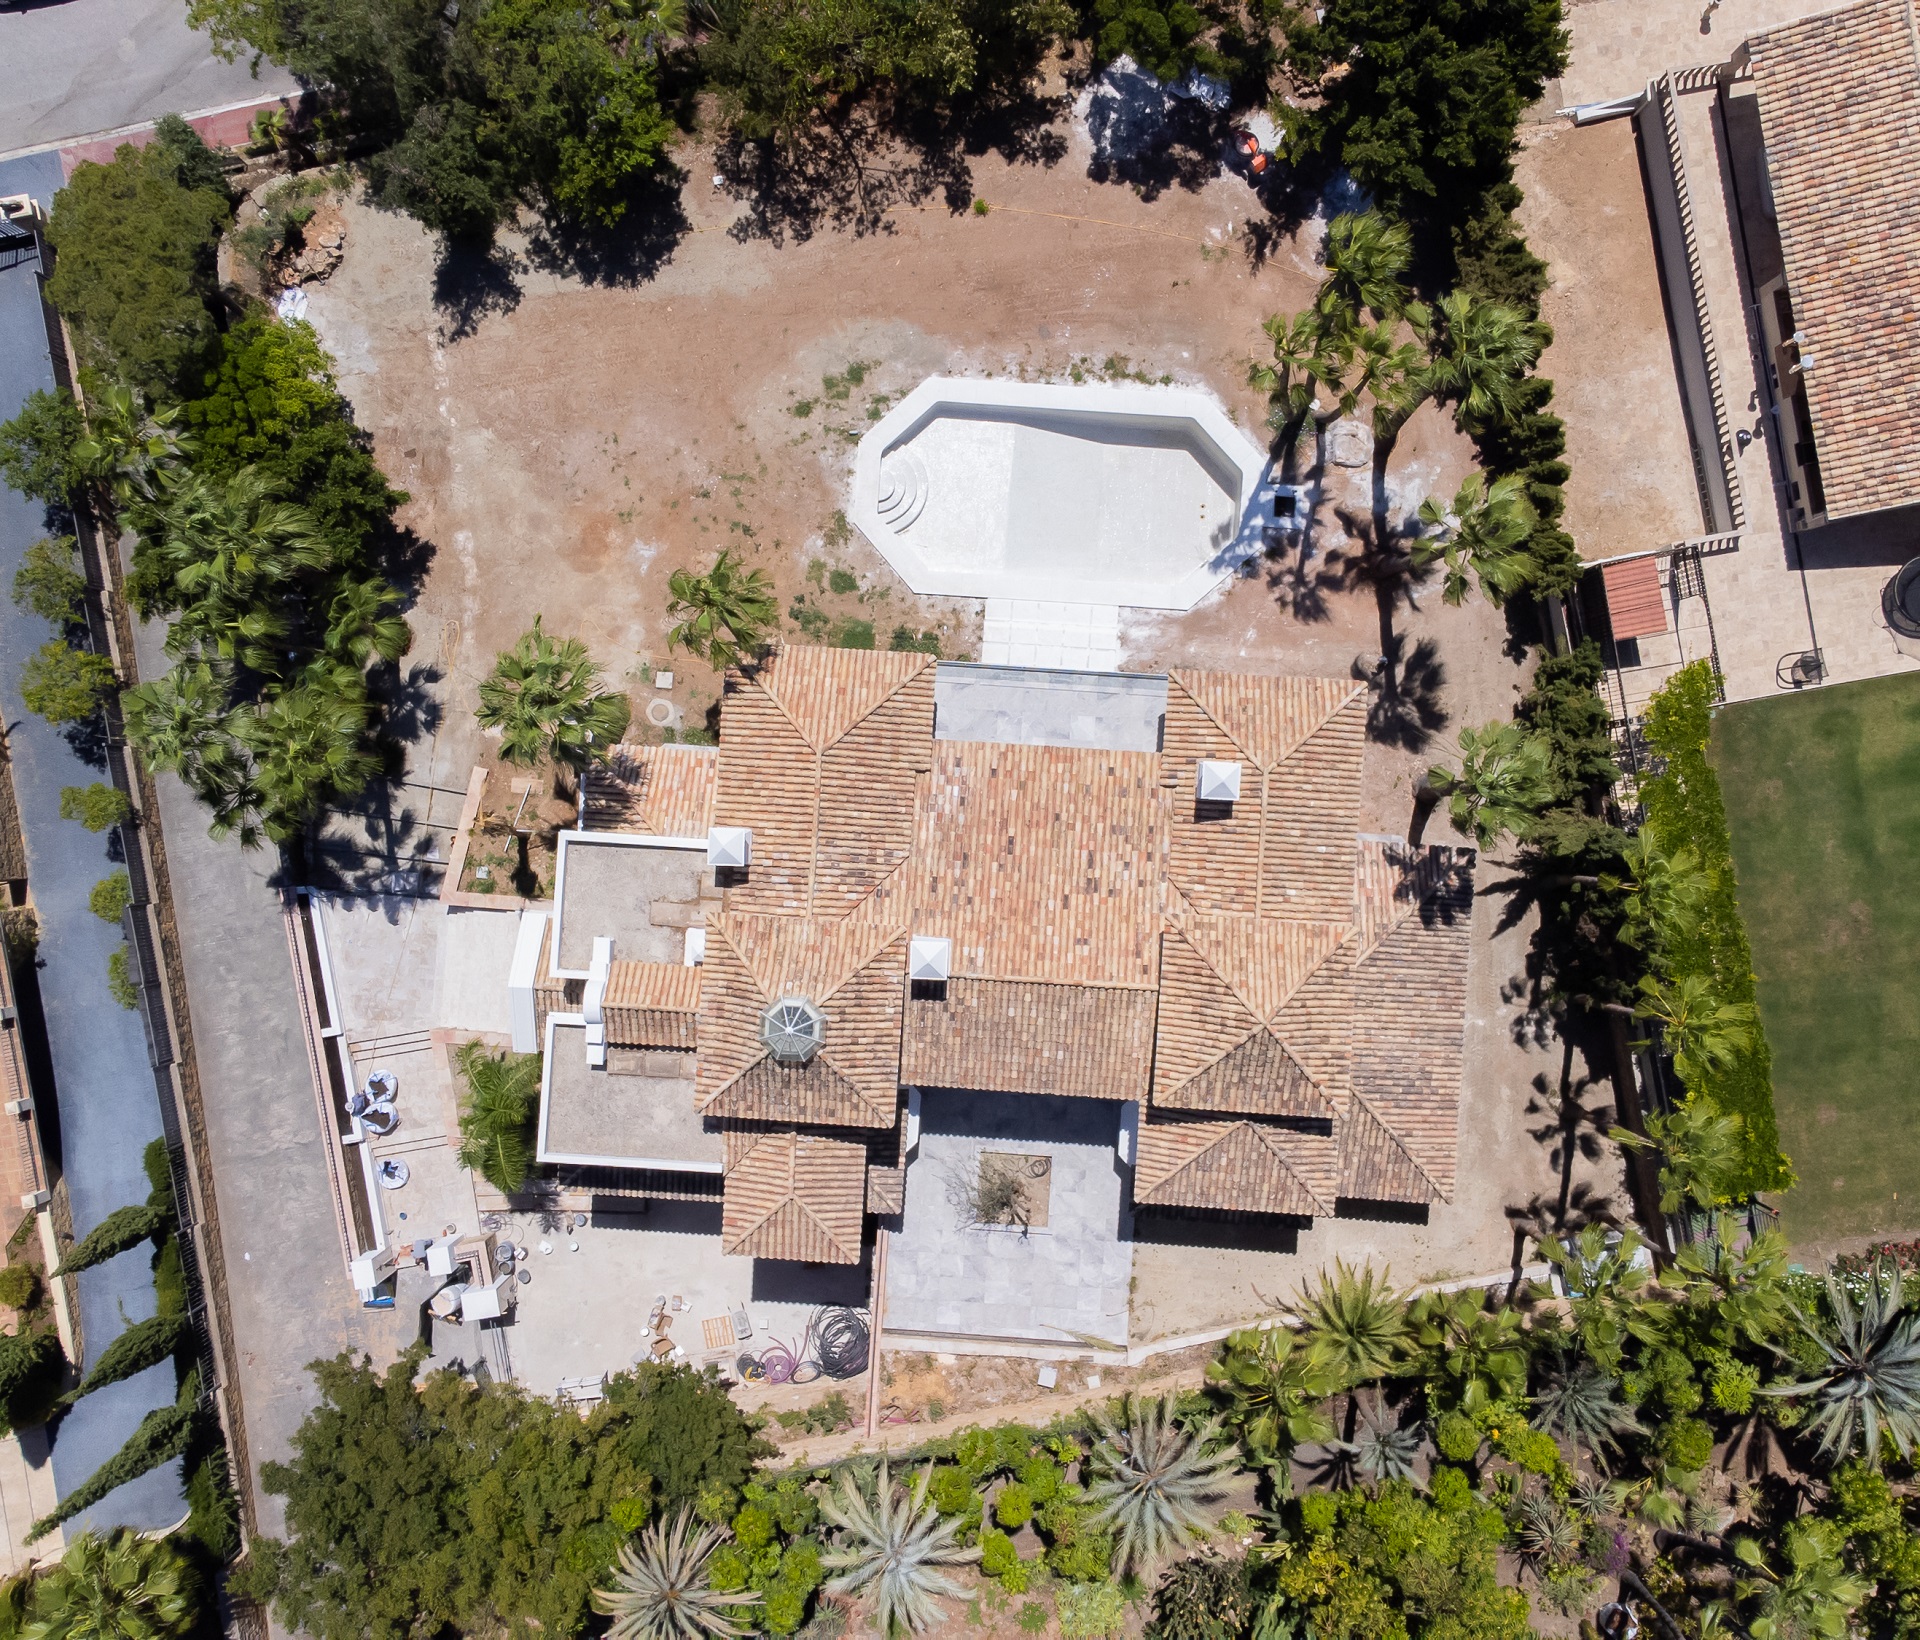 Alucinante mansión en Sierra Blanca lista para entrar a vivir! en la Beverly Hills Española